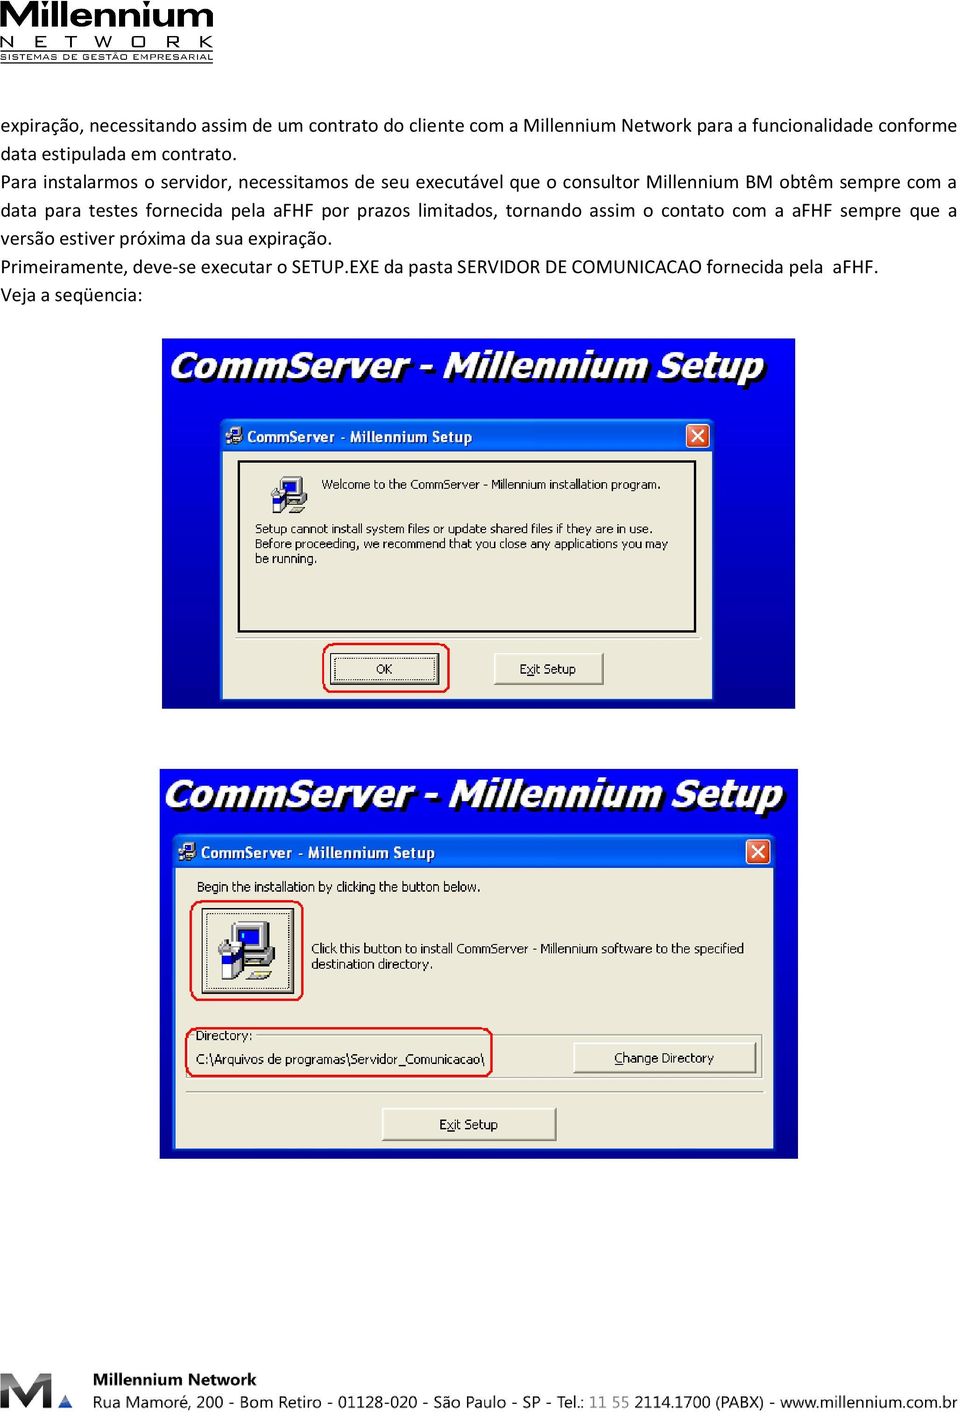 Para instalarmos o servidor, necessitamos de seu executável que o consultor Millennium BM obtêm sempre com a data para testes